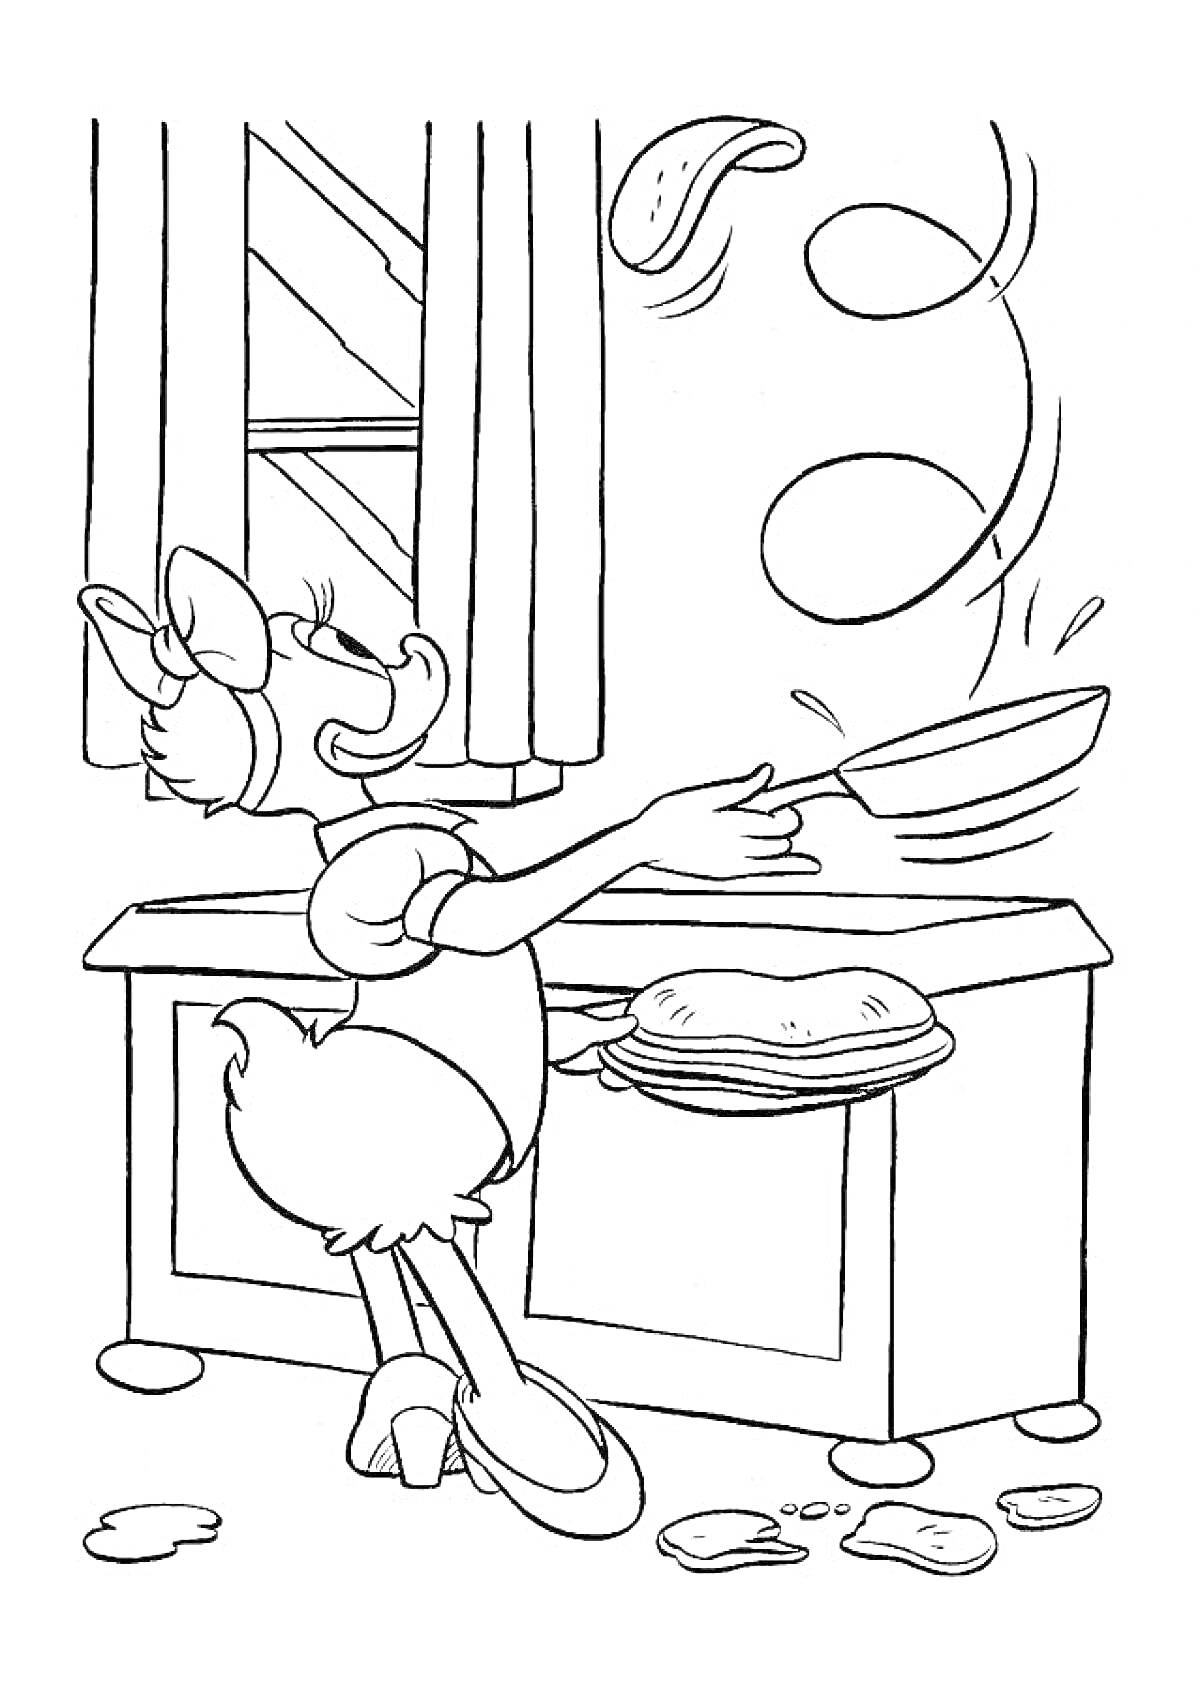 Дейзи Дак готовит на кухне, бросает блины в воздух, окно и шторы на заднем фоне